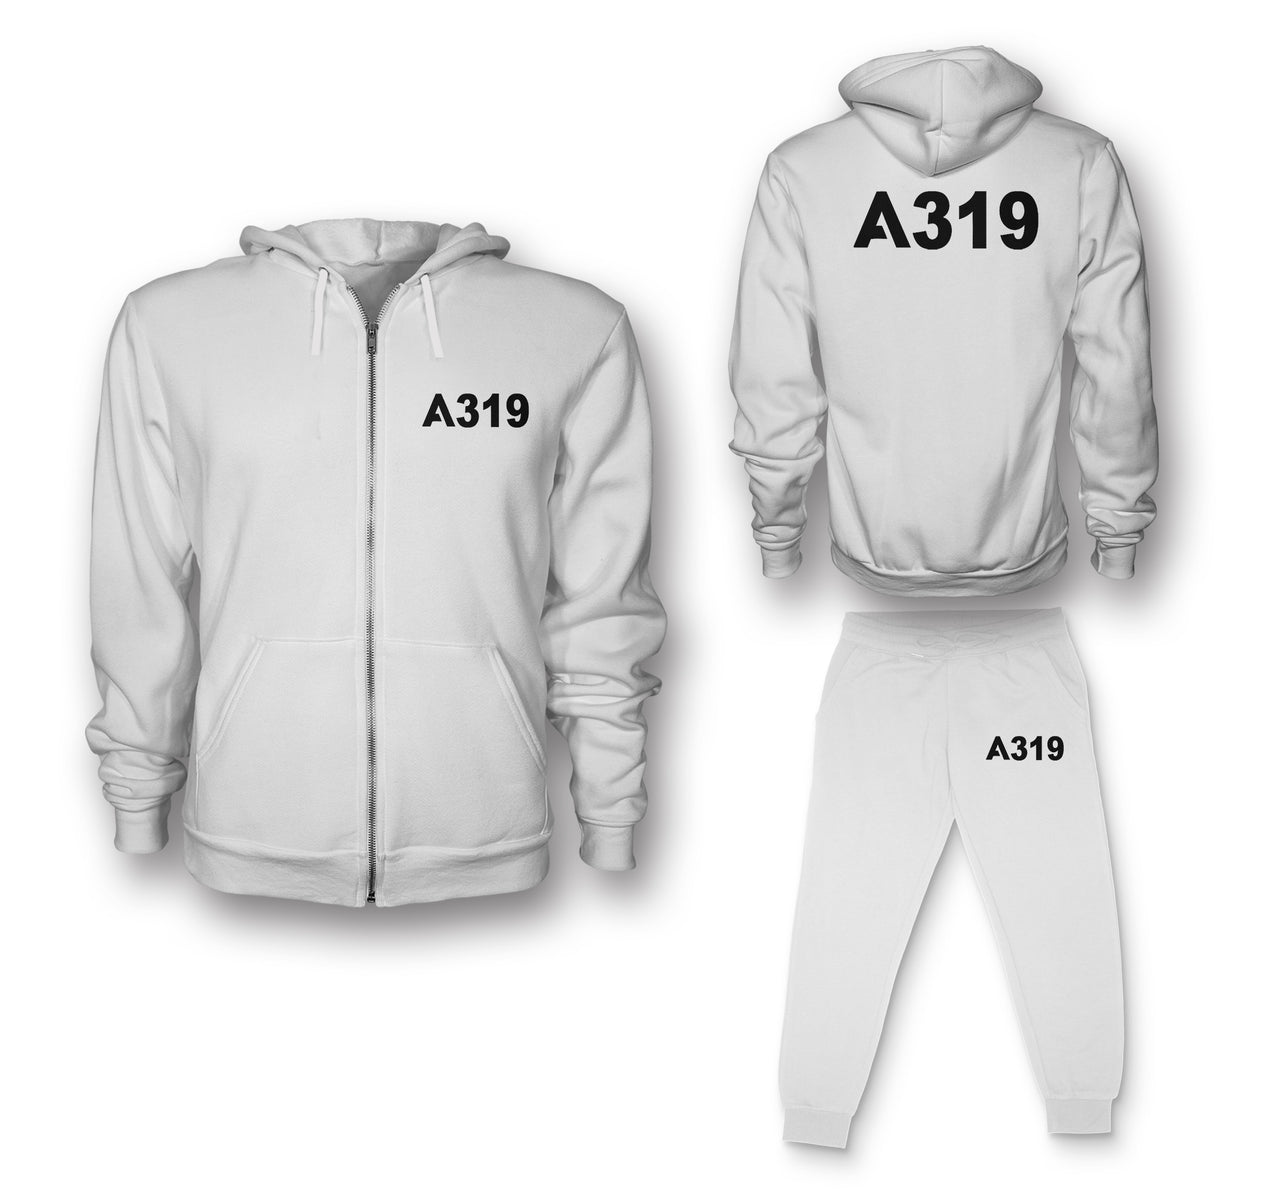 A319 Flat Text Designed Zipped Hoodies & Sweatpants Set